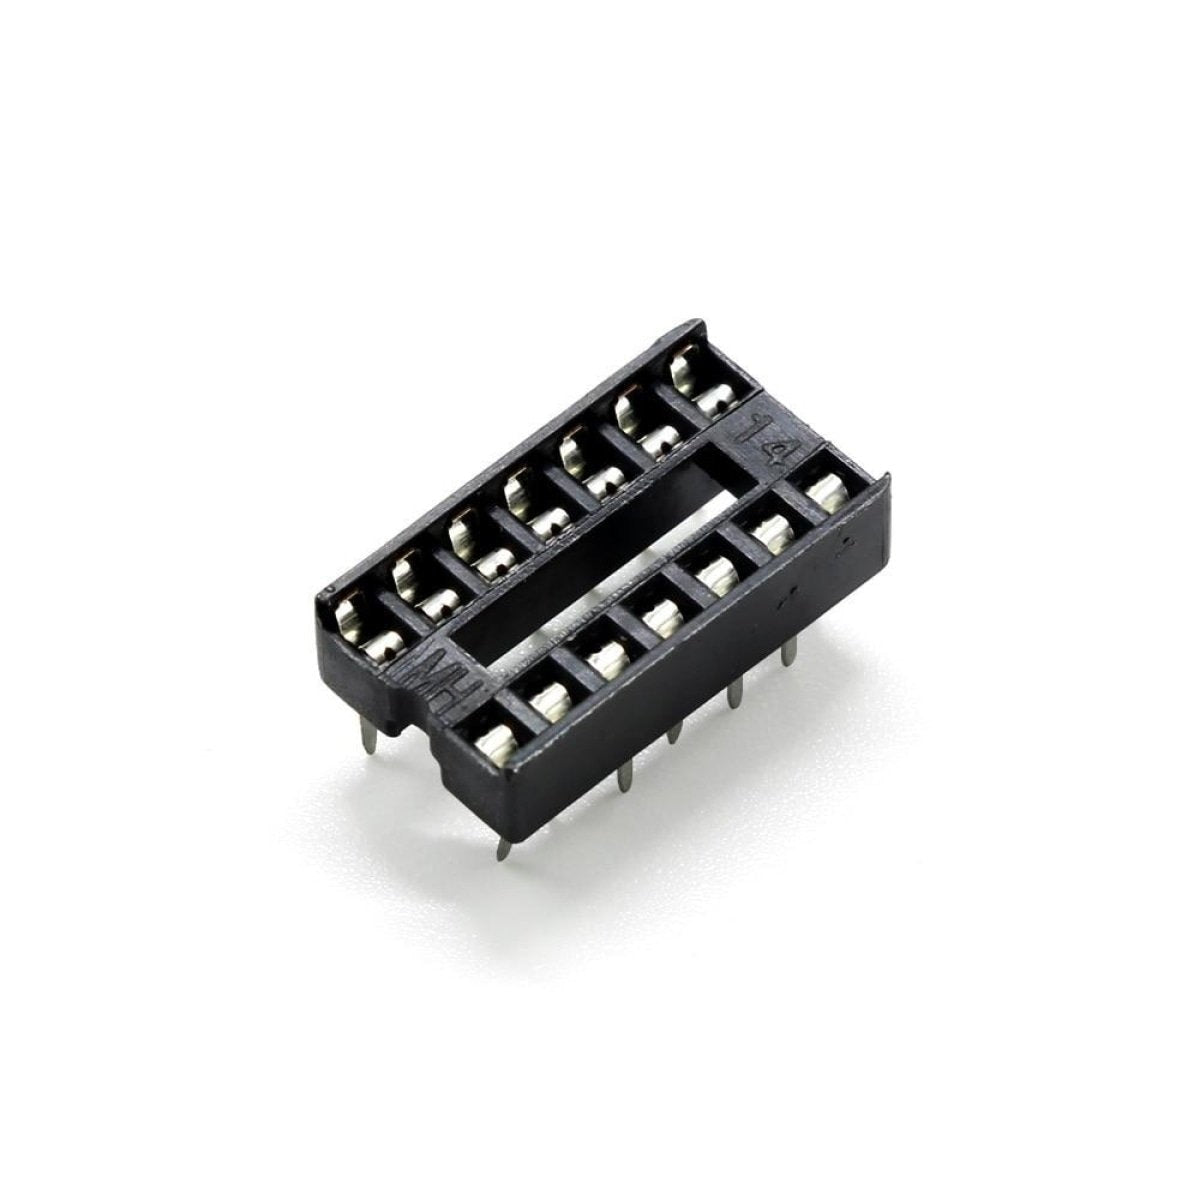 2pcs DIP IC Adaptor Solder Socket 6, 8, 14, 16, 18, 20, 24, 28, 32 Pin - 14 pins - - Asia Sell